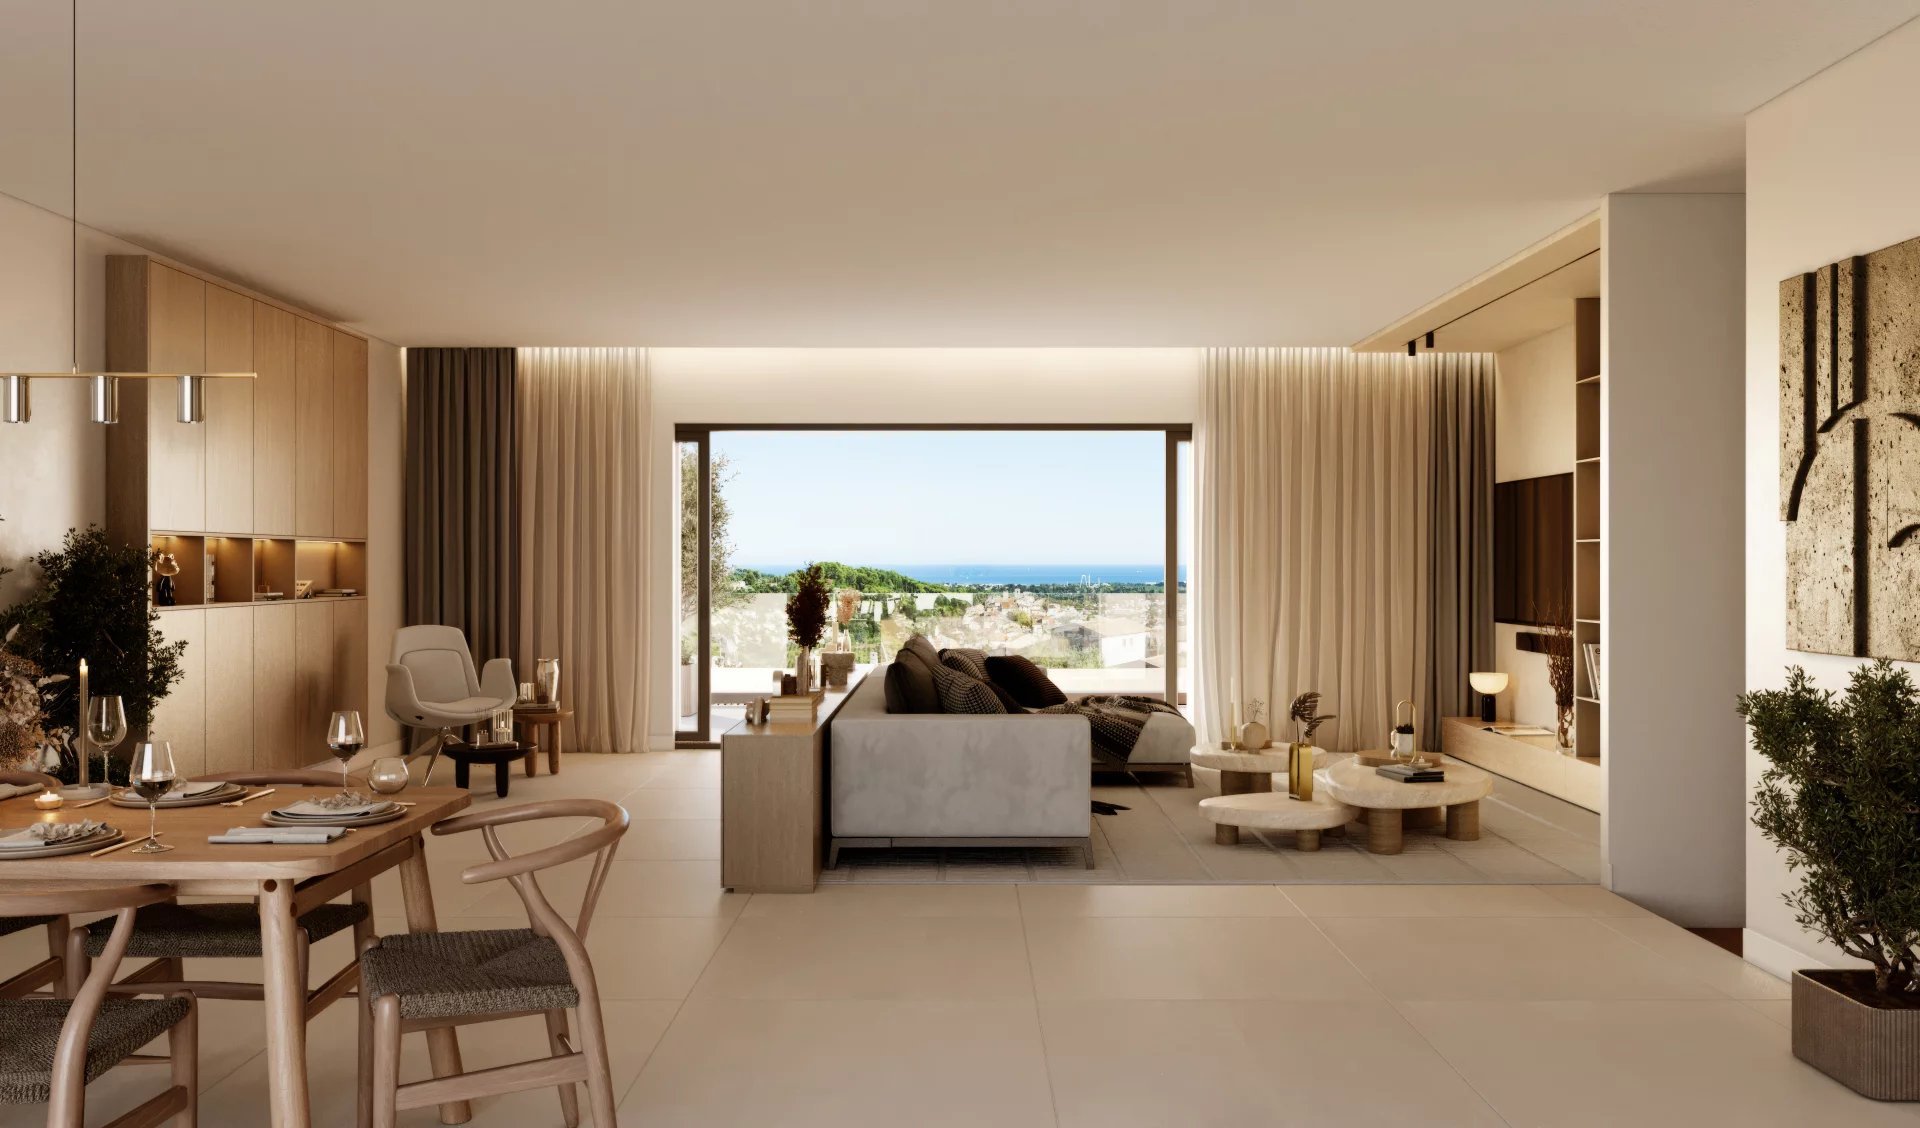 Spacieux appartements neufs de grand standing avec vue mer et piscine, Biot (4 pièces, 140 à 145 m²)